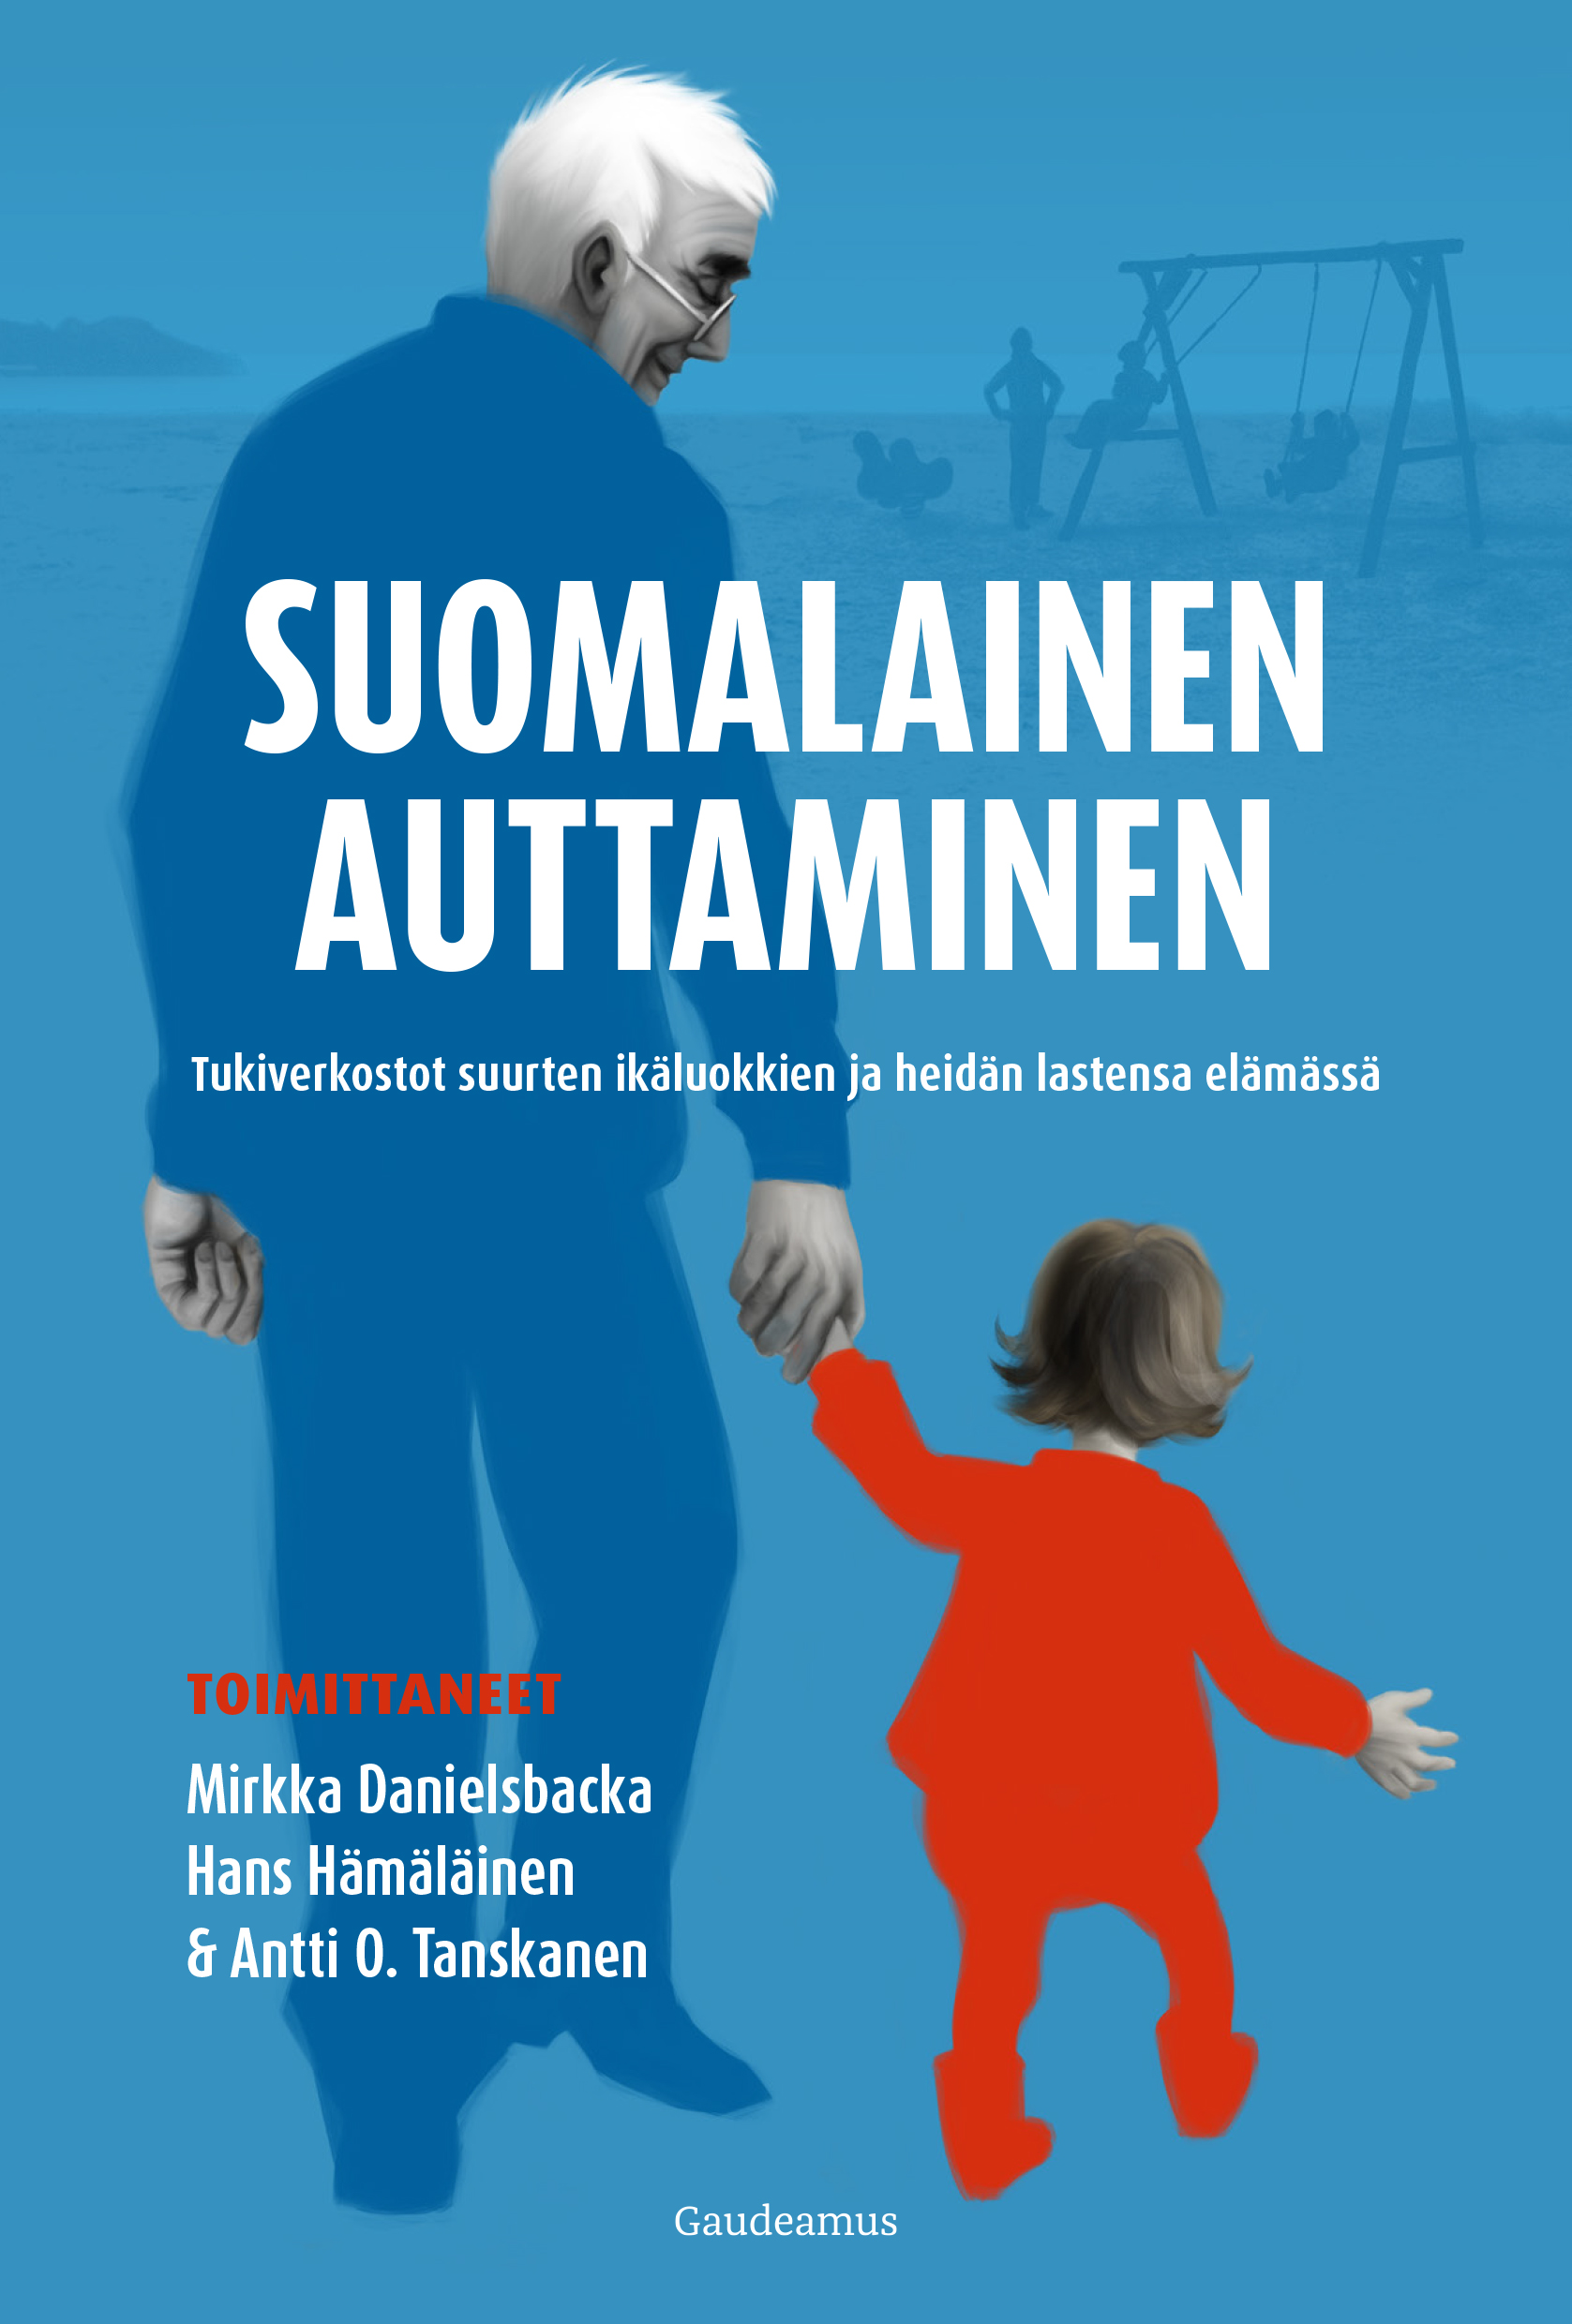 Danielsbacka, Mirkka - Suomalainen auttaminen: Tukiverkostot suurten ikäluokkien ja heidän lastensa elämässä, e-kirja